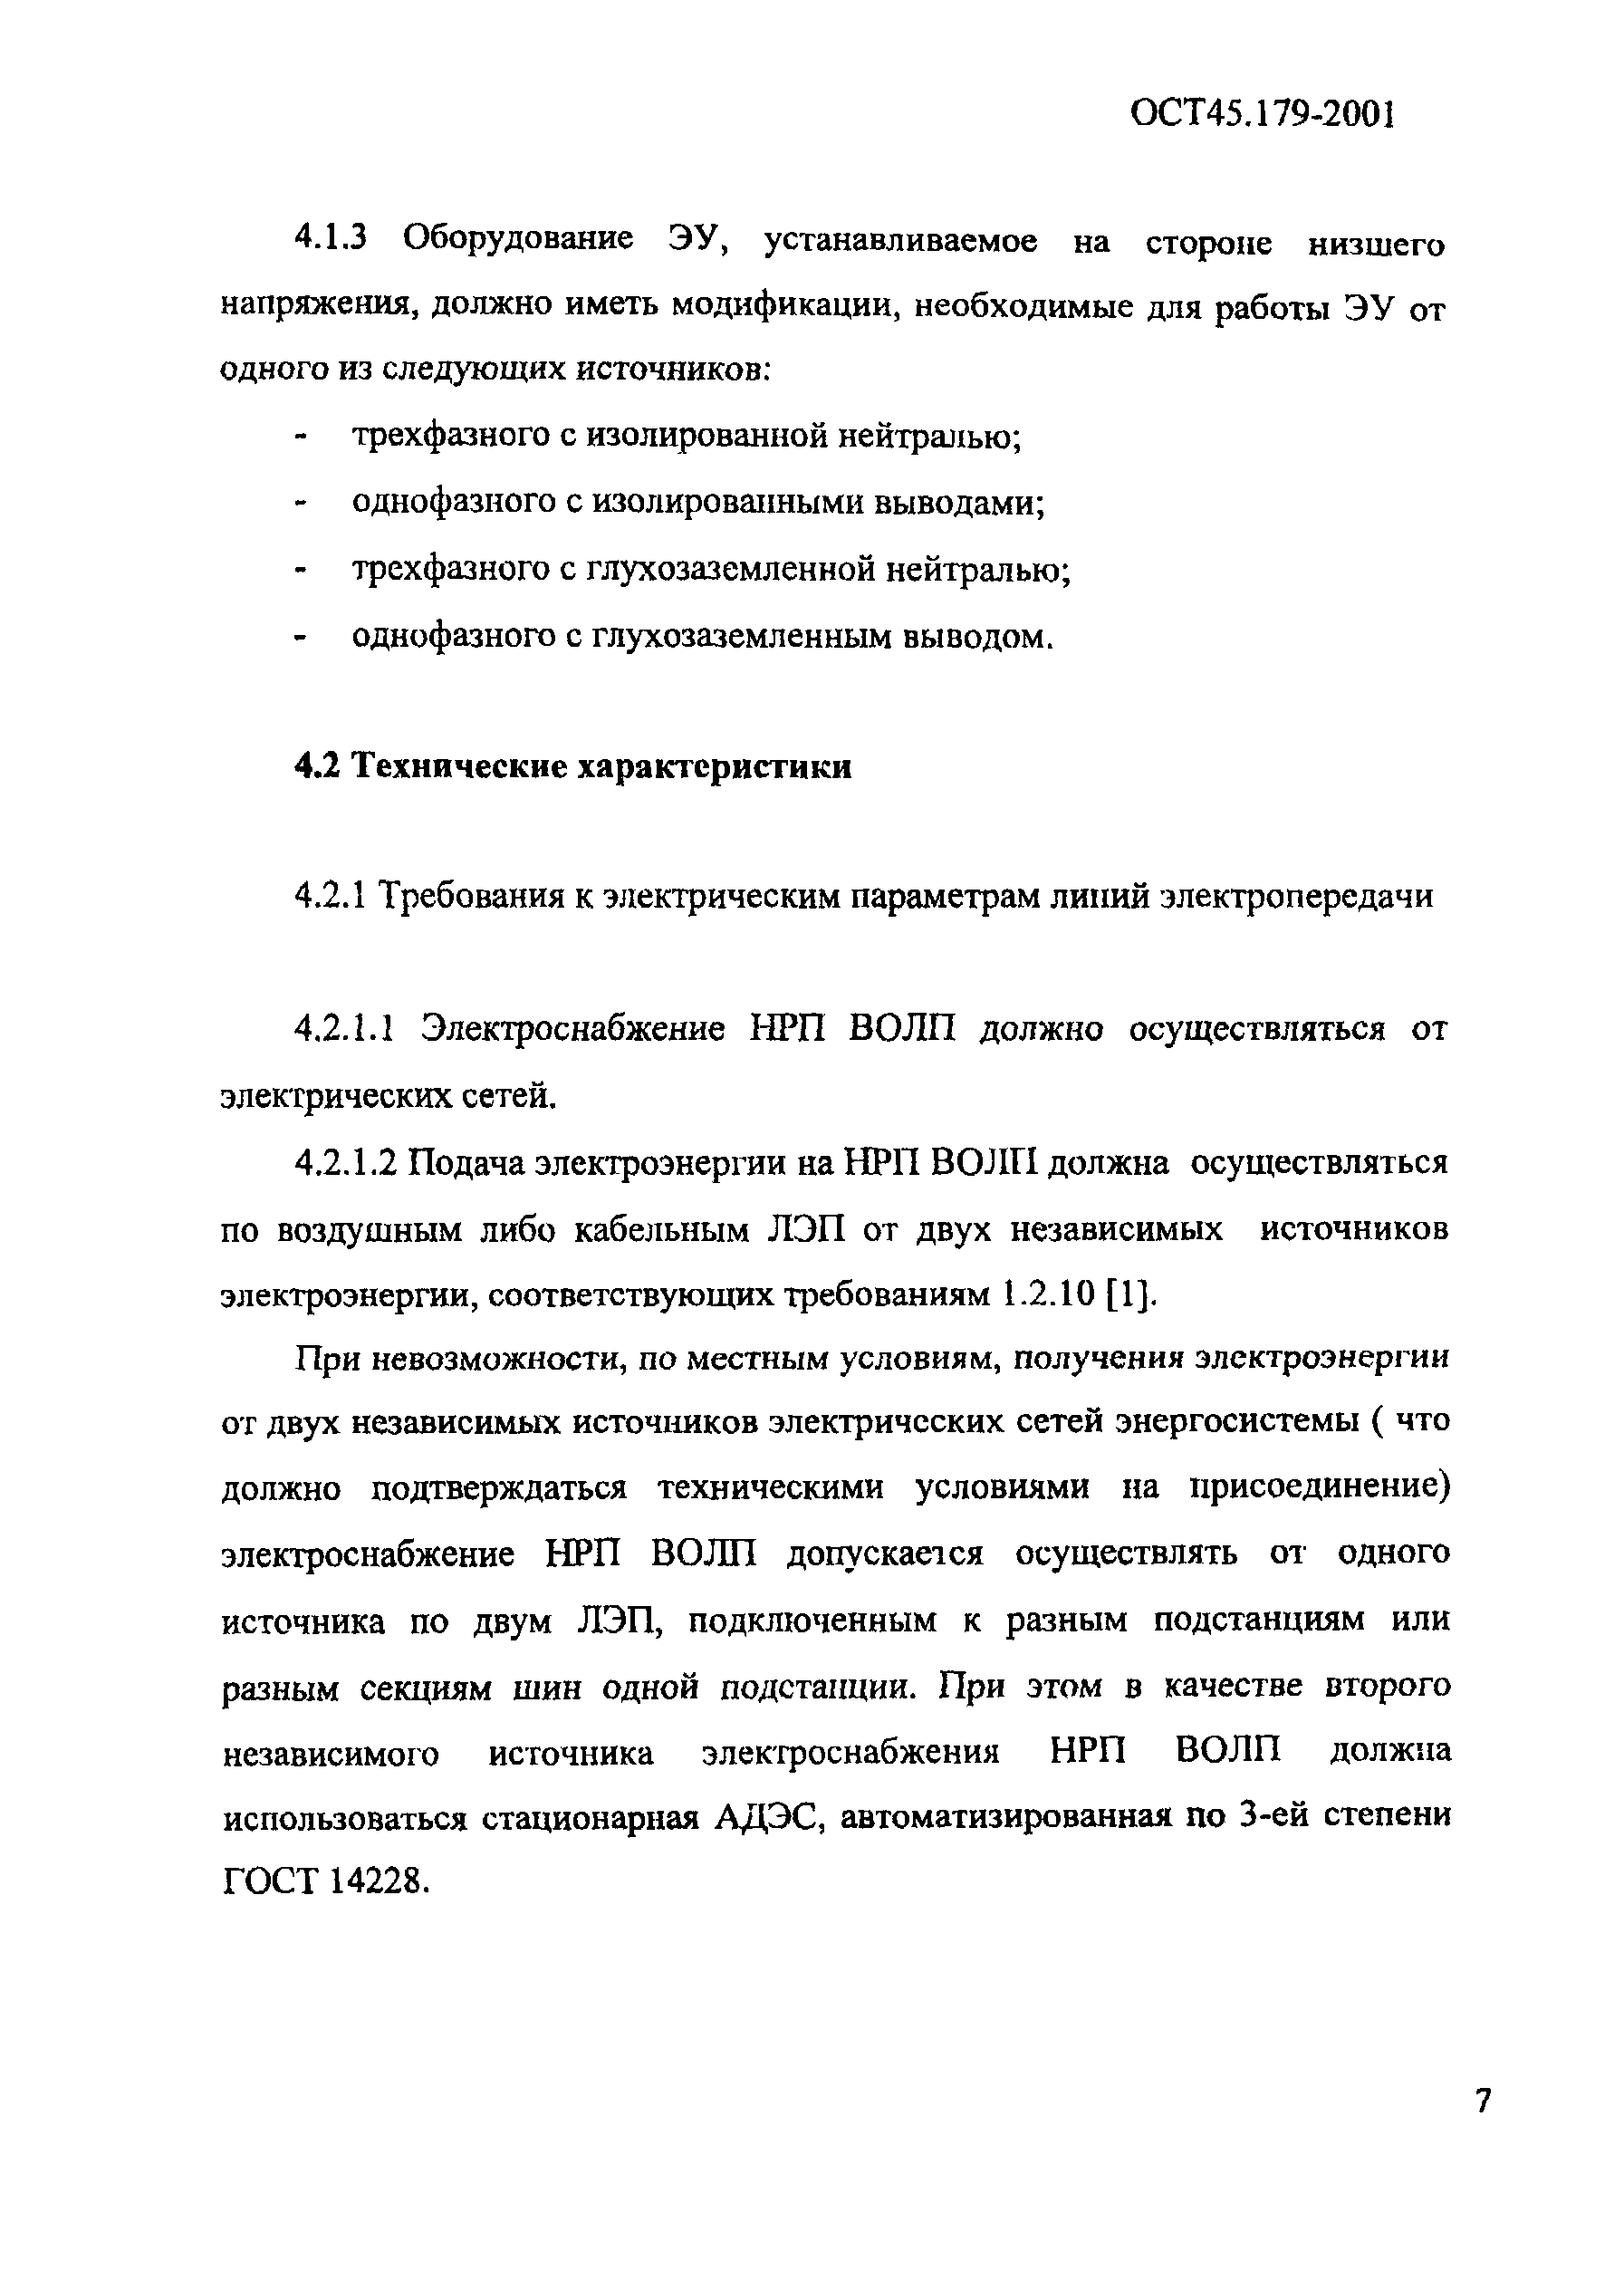 ОСТ 45.179-2001